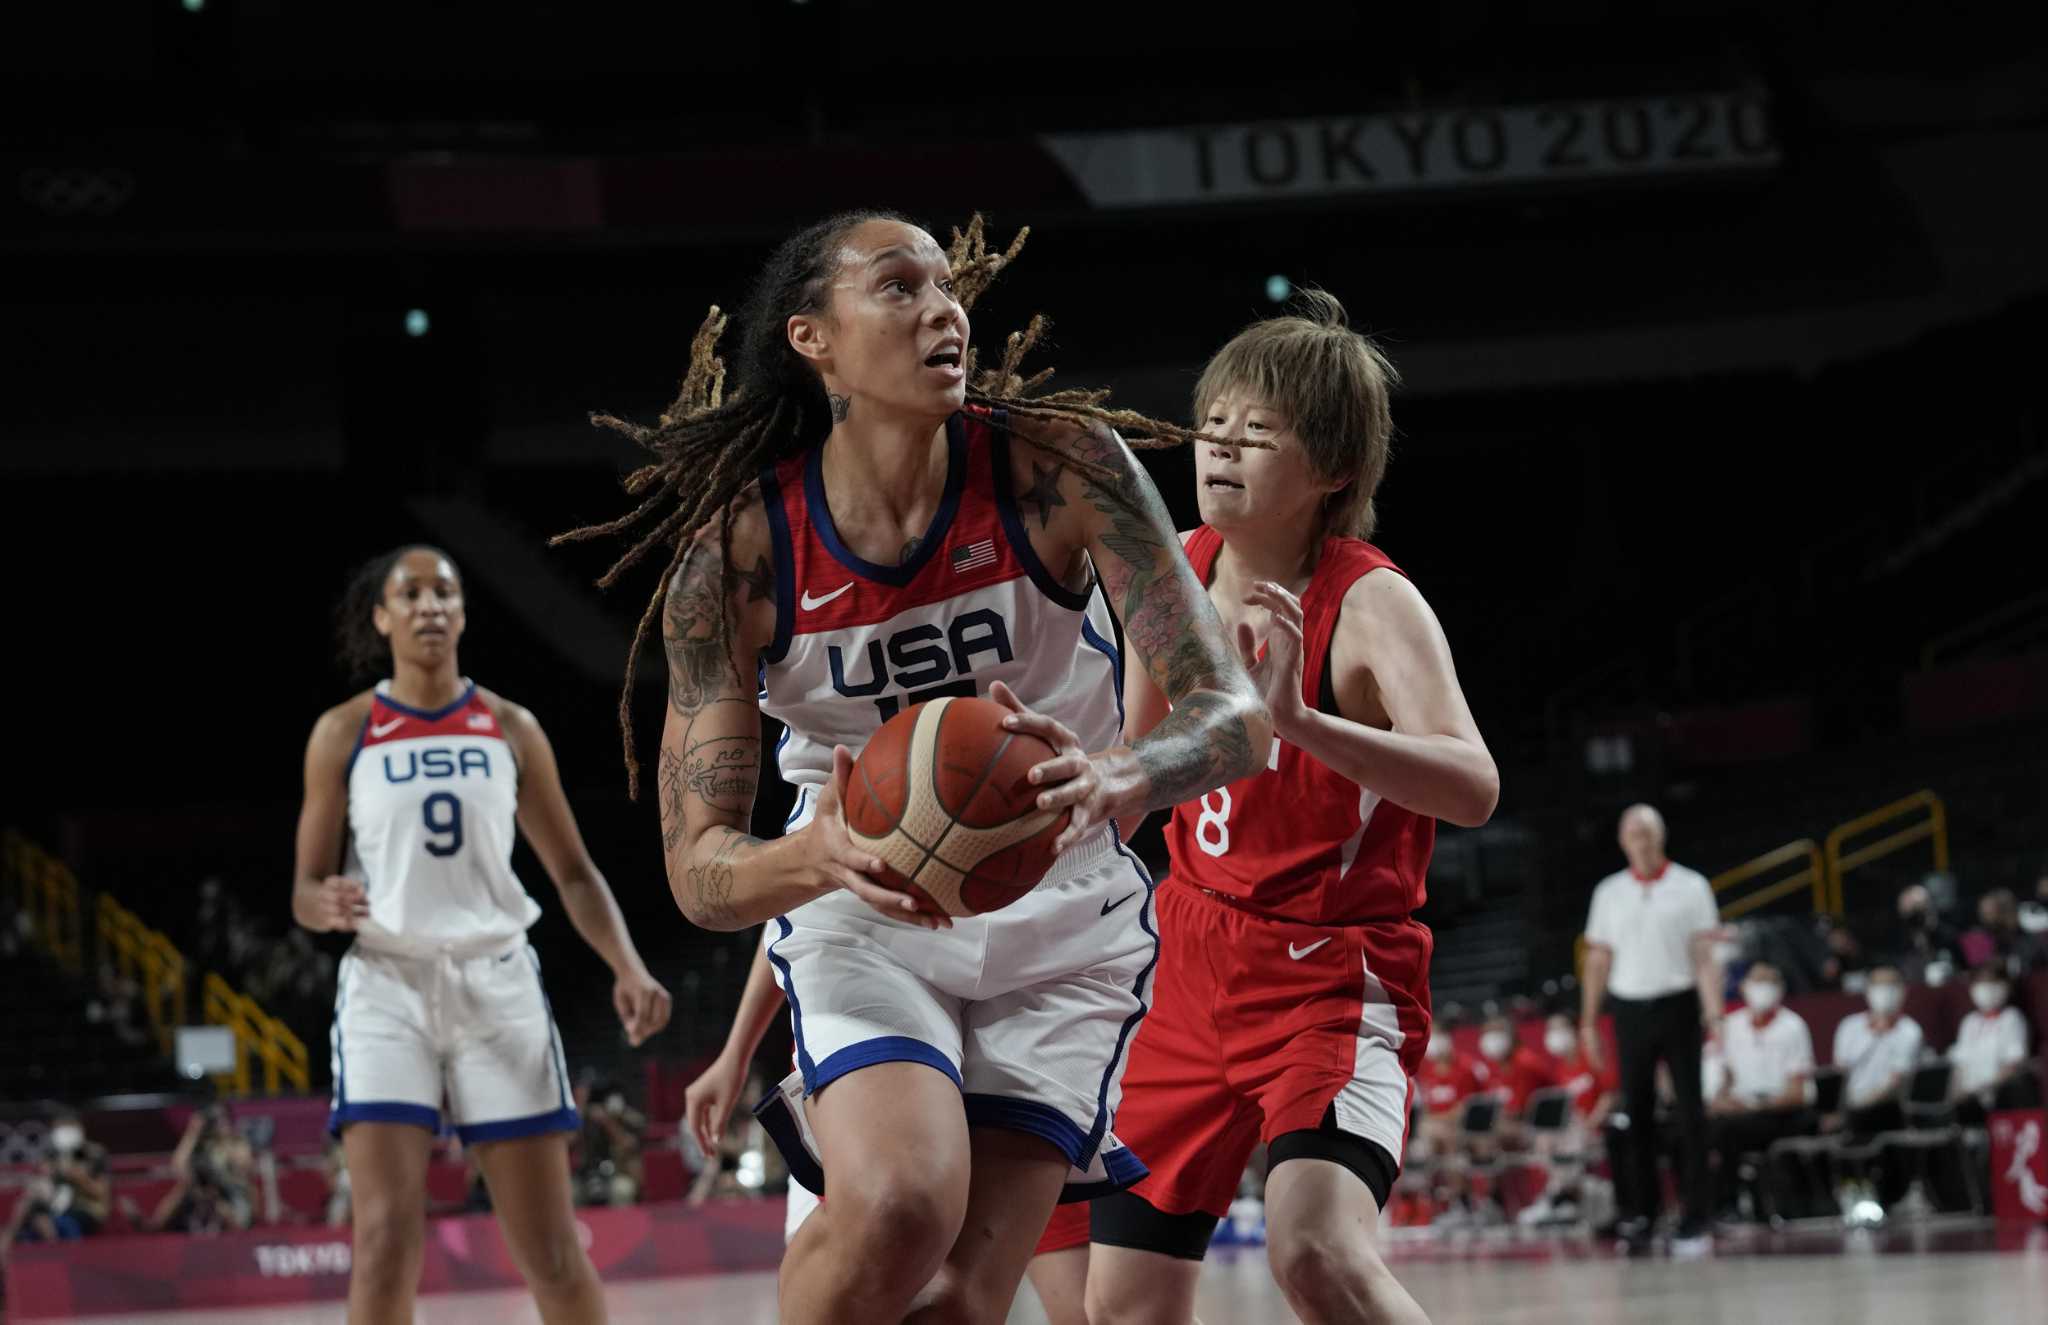 Baylor & WNBA Legend Brittney Griner Gets Support from Boston